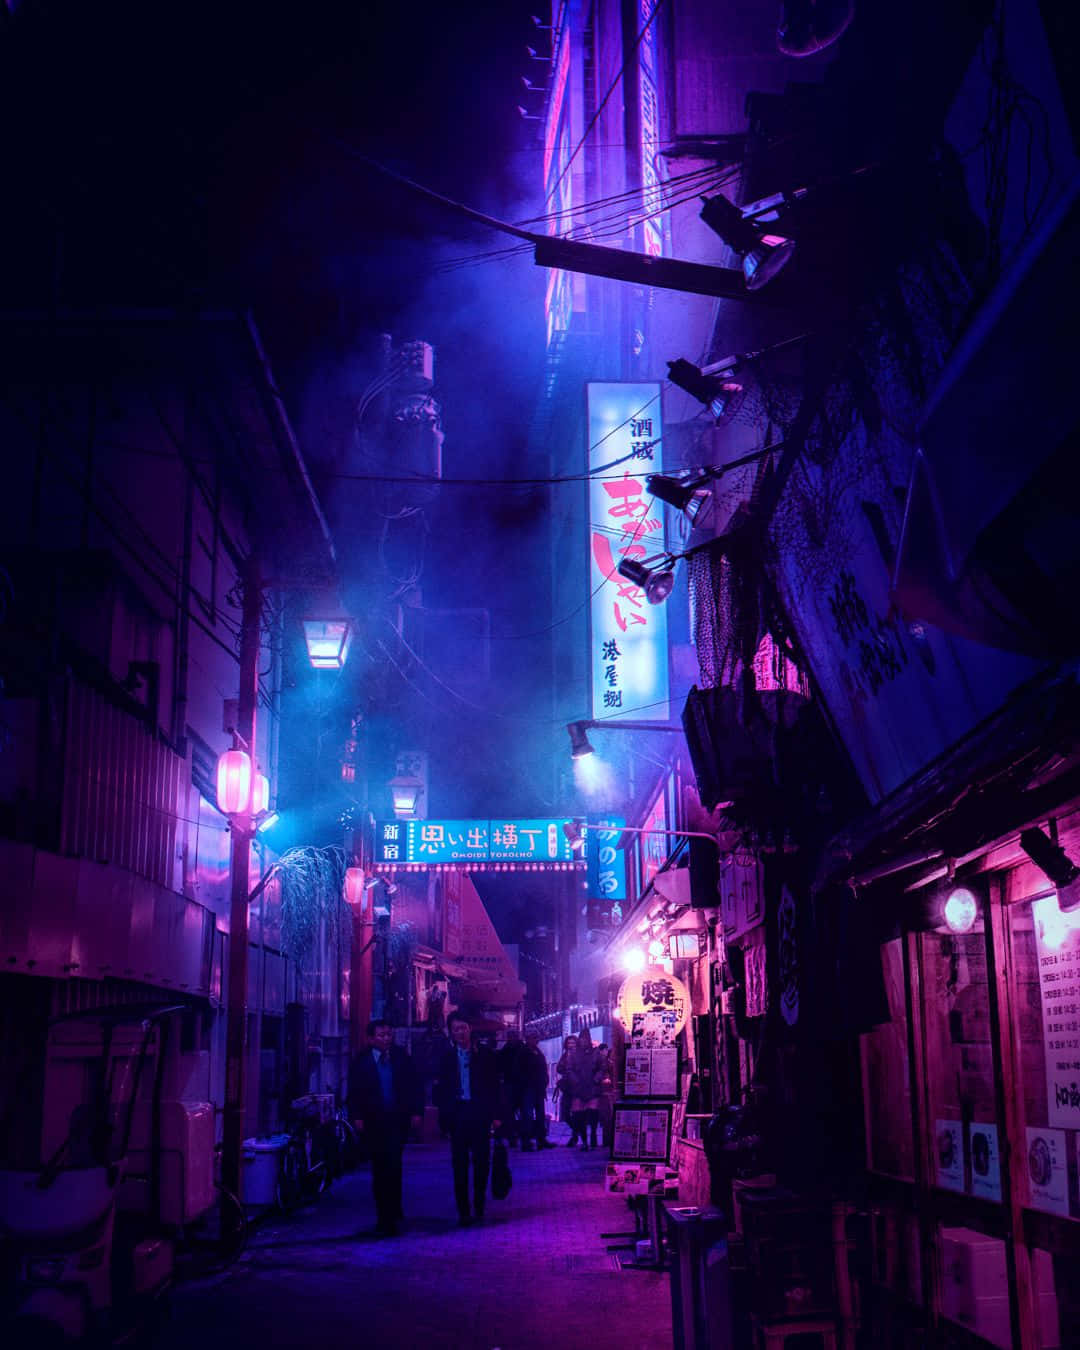 Cyberpunk Neon Ninja with purple fire sword 4K wallpaper download